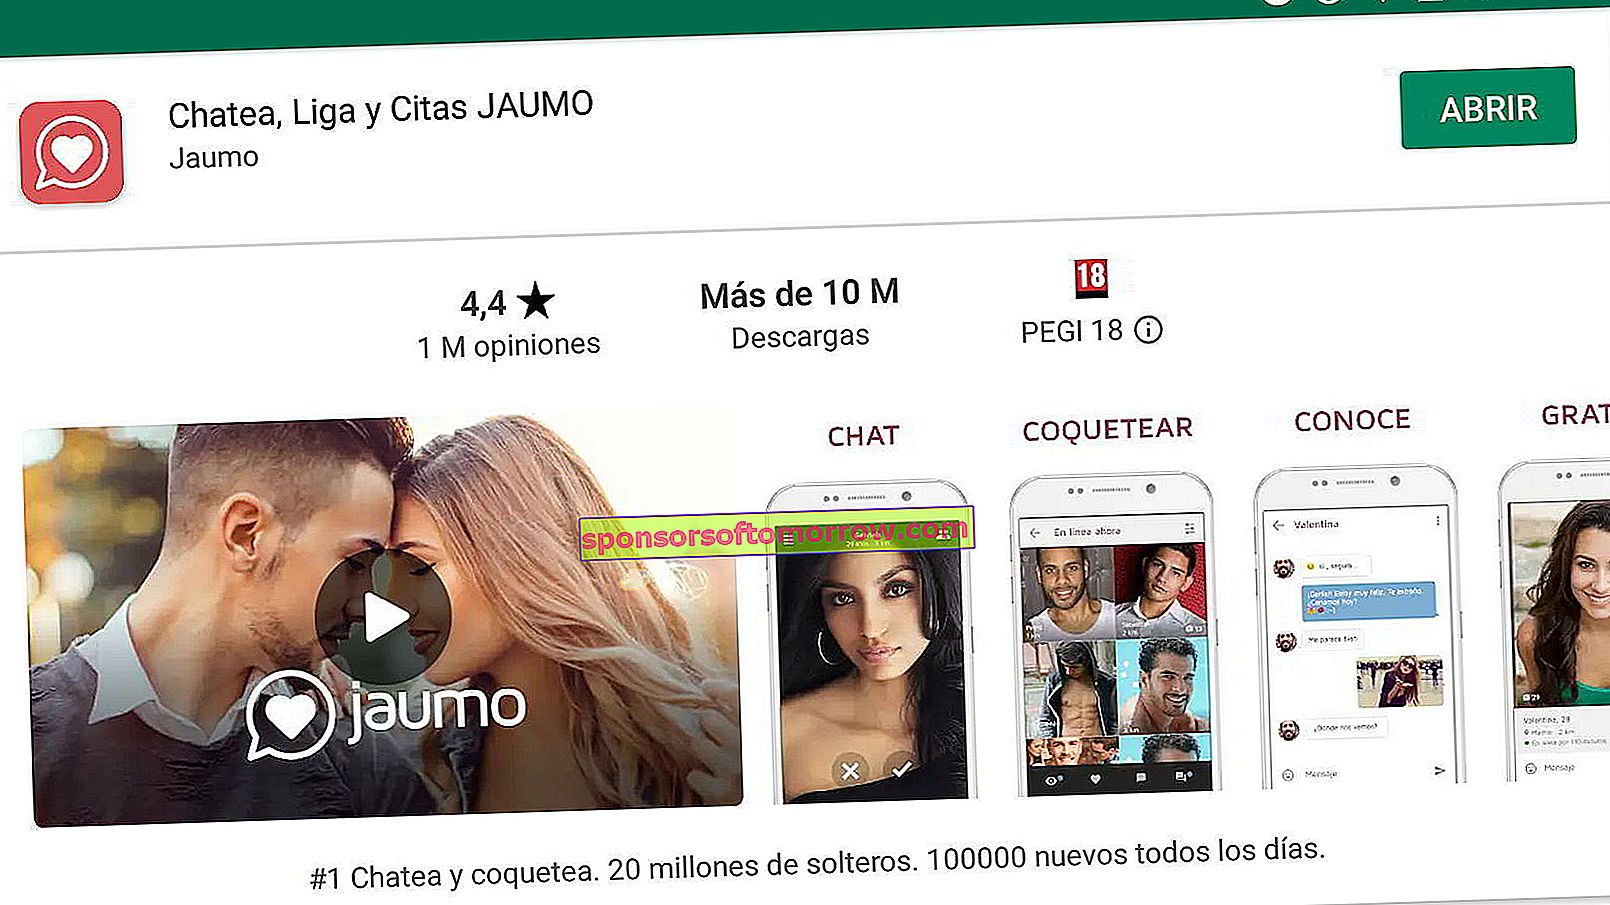 10 dicas para o Jaumo, o novo aplicativo de namoro 7